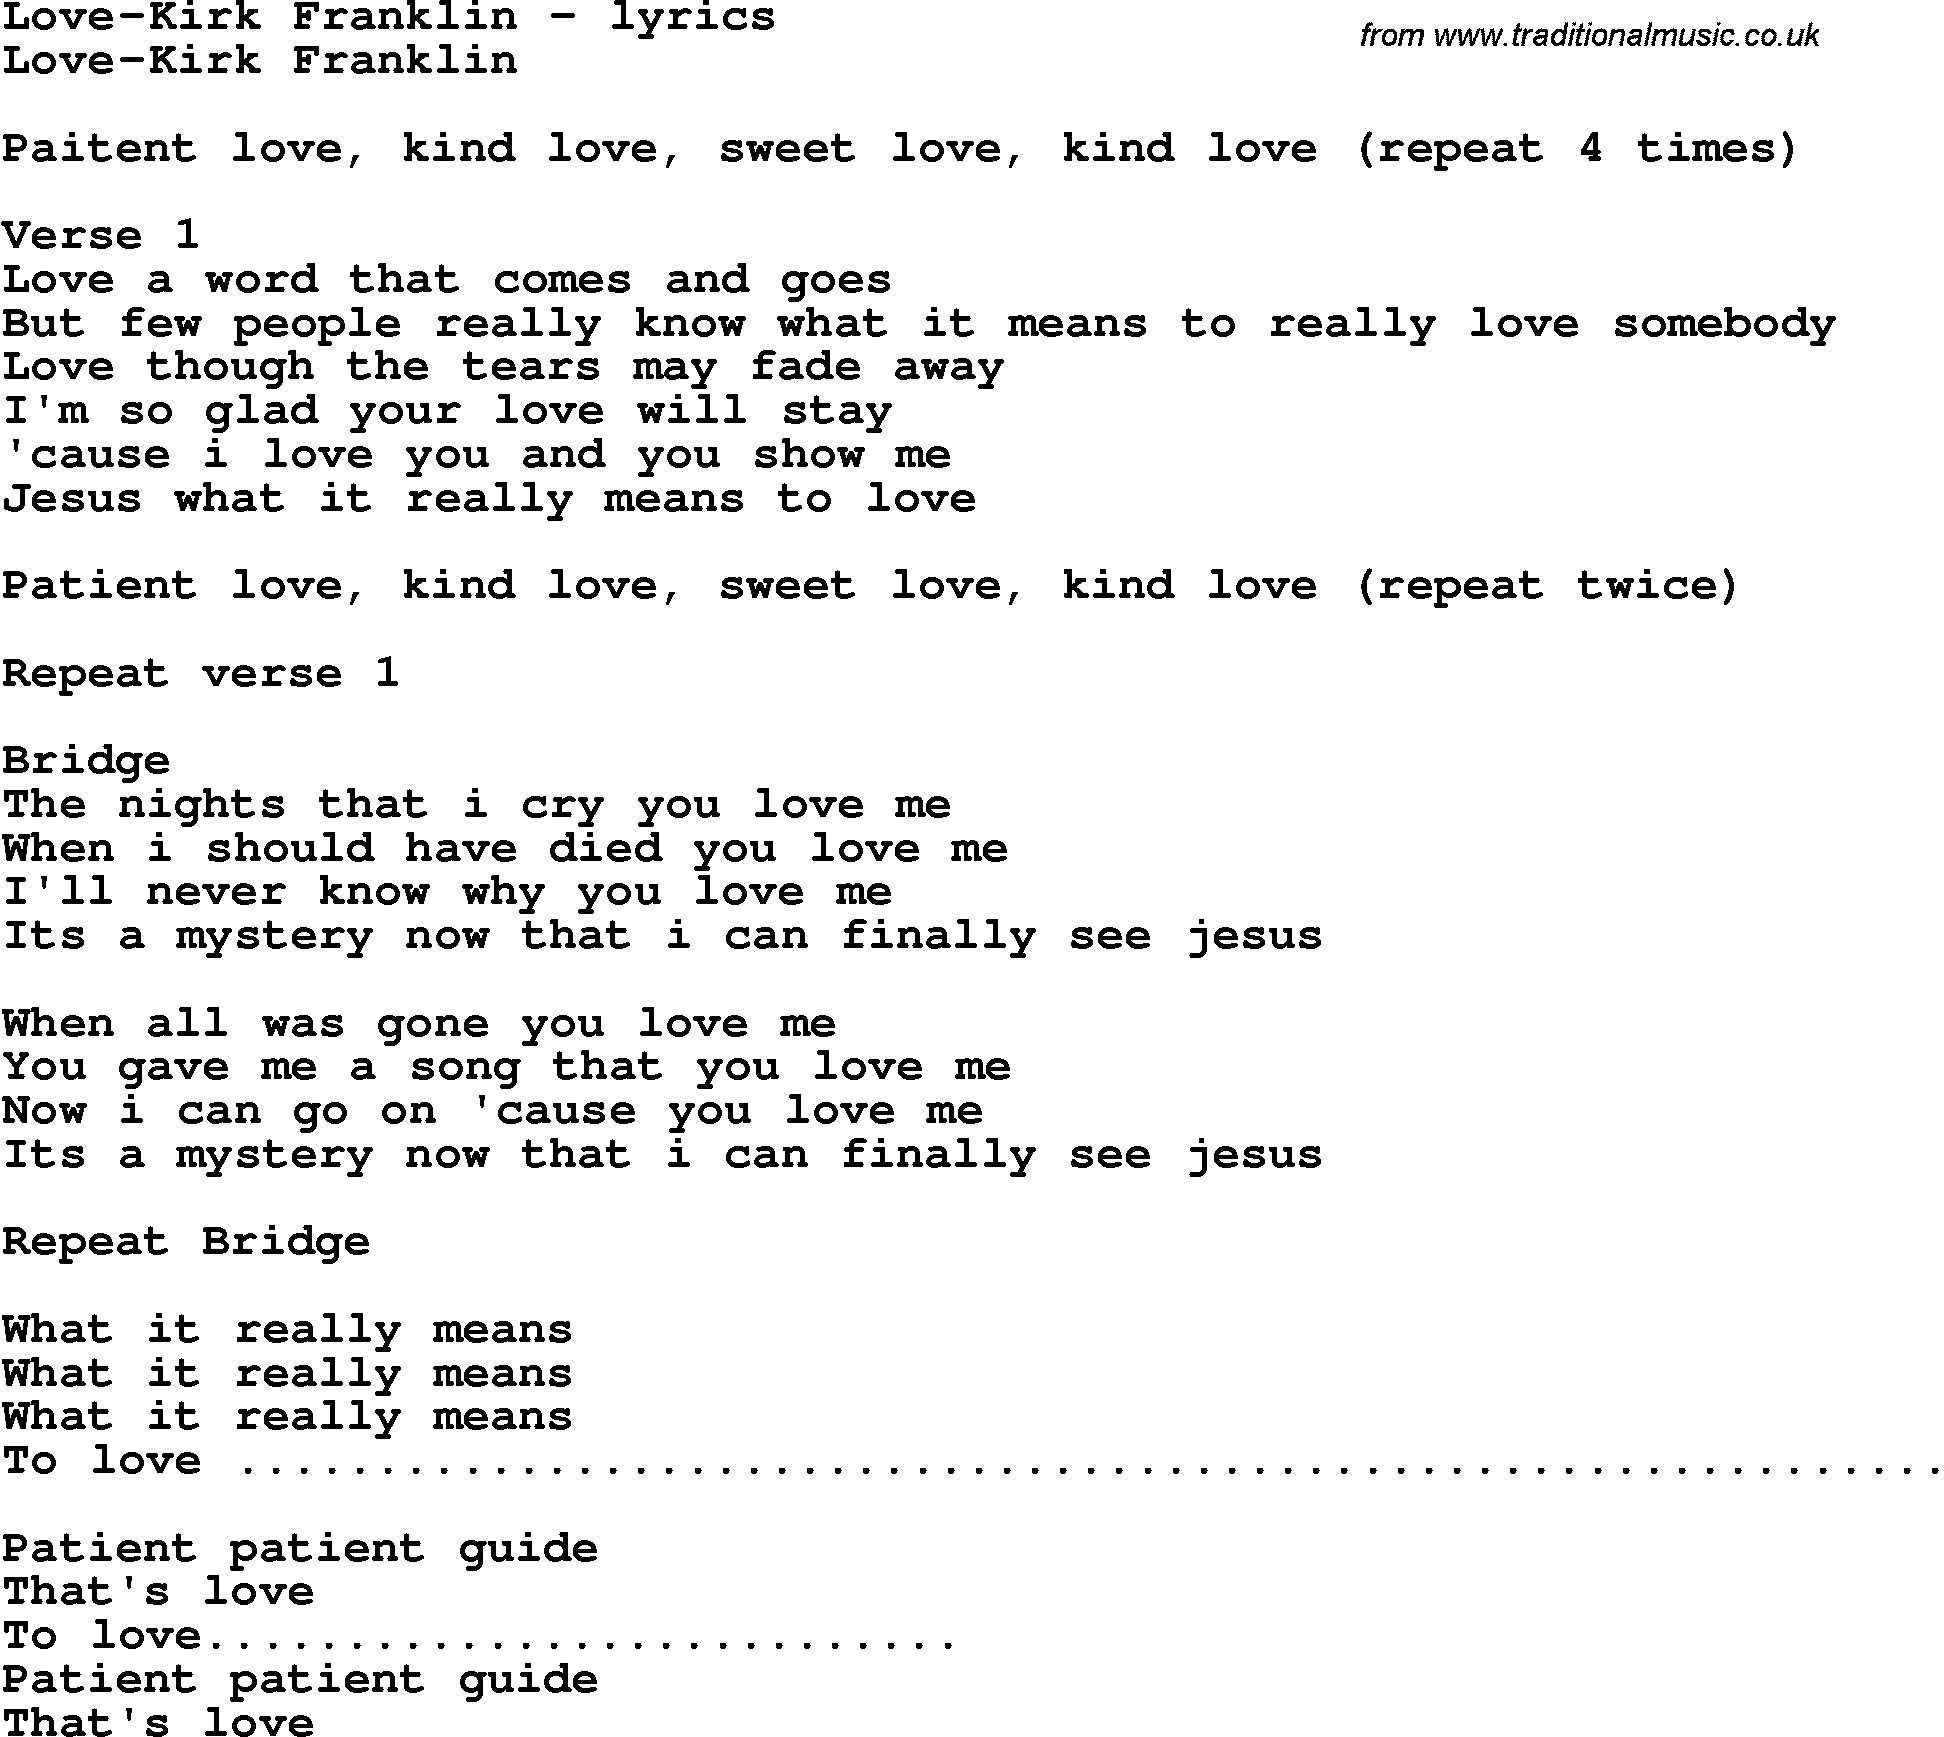 Love Song Lyrics for: Love-Kirk Franklin